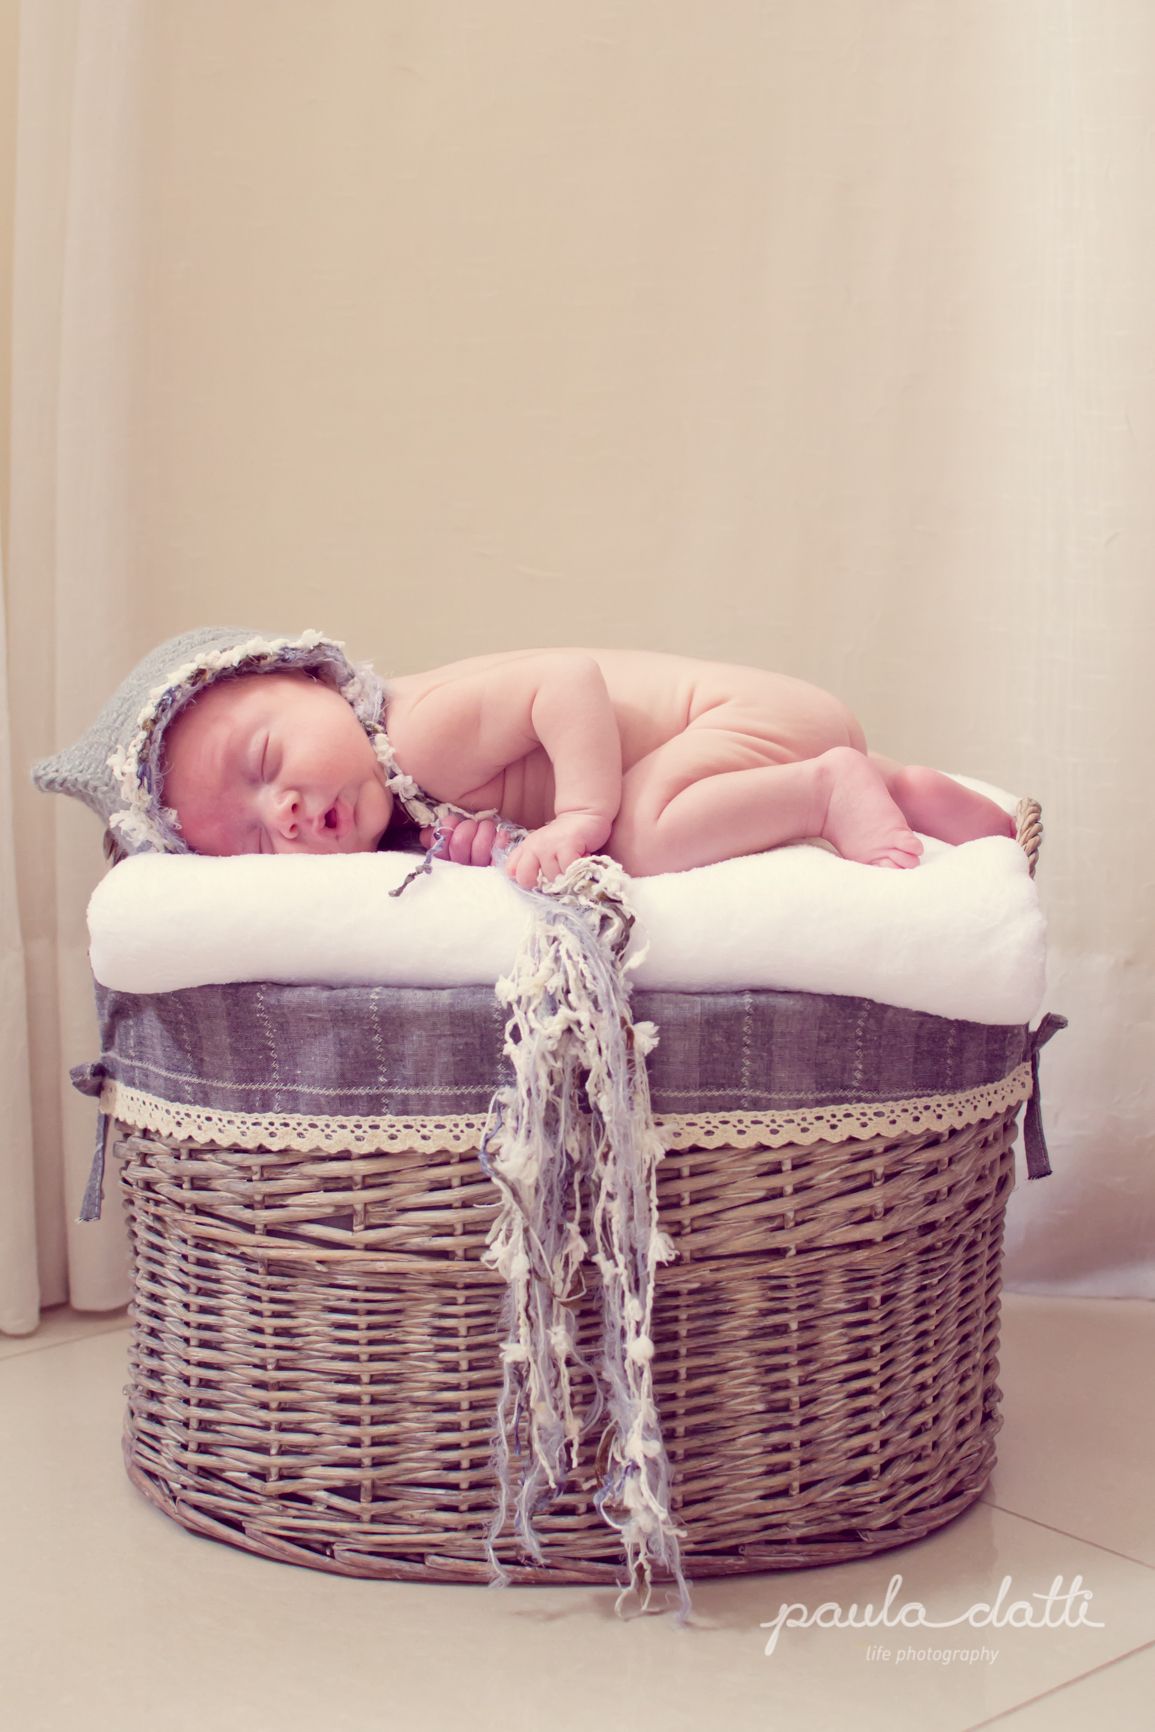 Foto do primeiro ensaio de recém-nascido remunerado da fotógrafa. Foto: Paula Datti